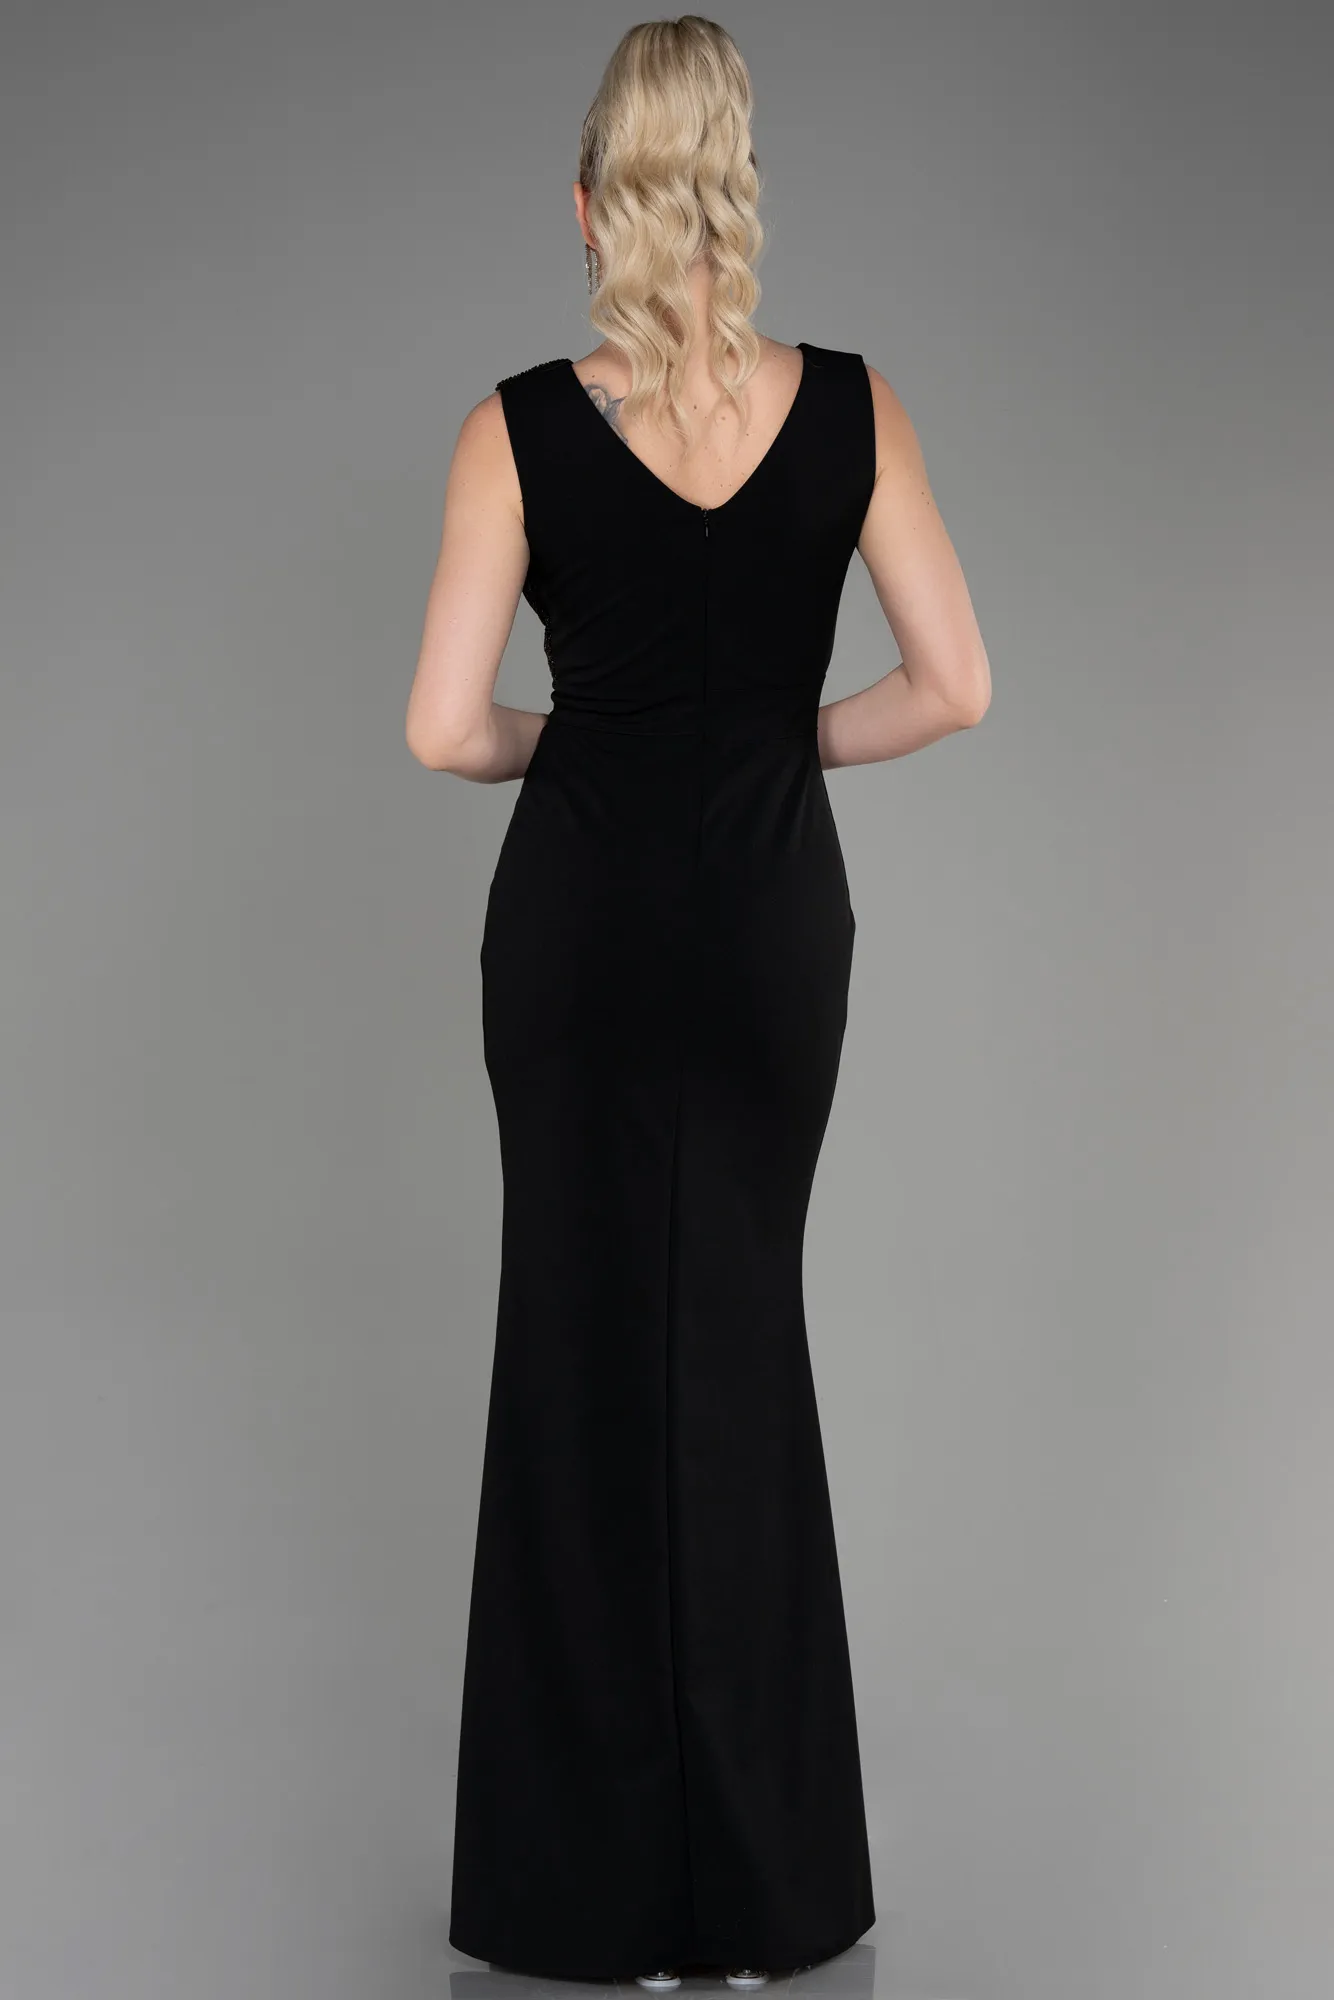 Black-Long Evening Dress ABU1190